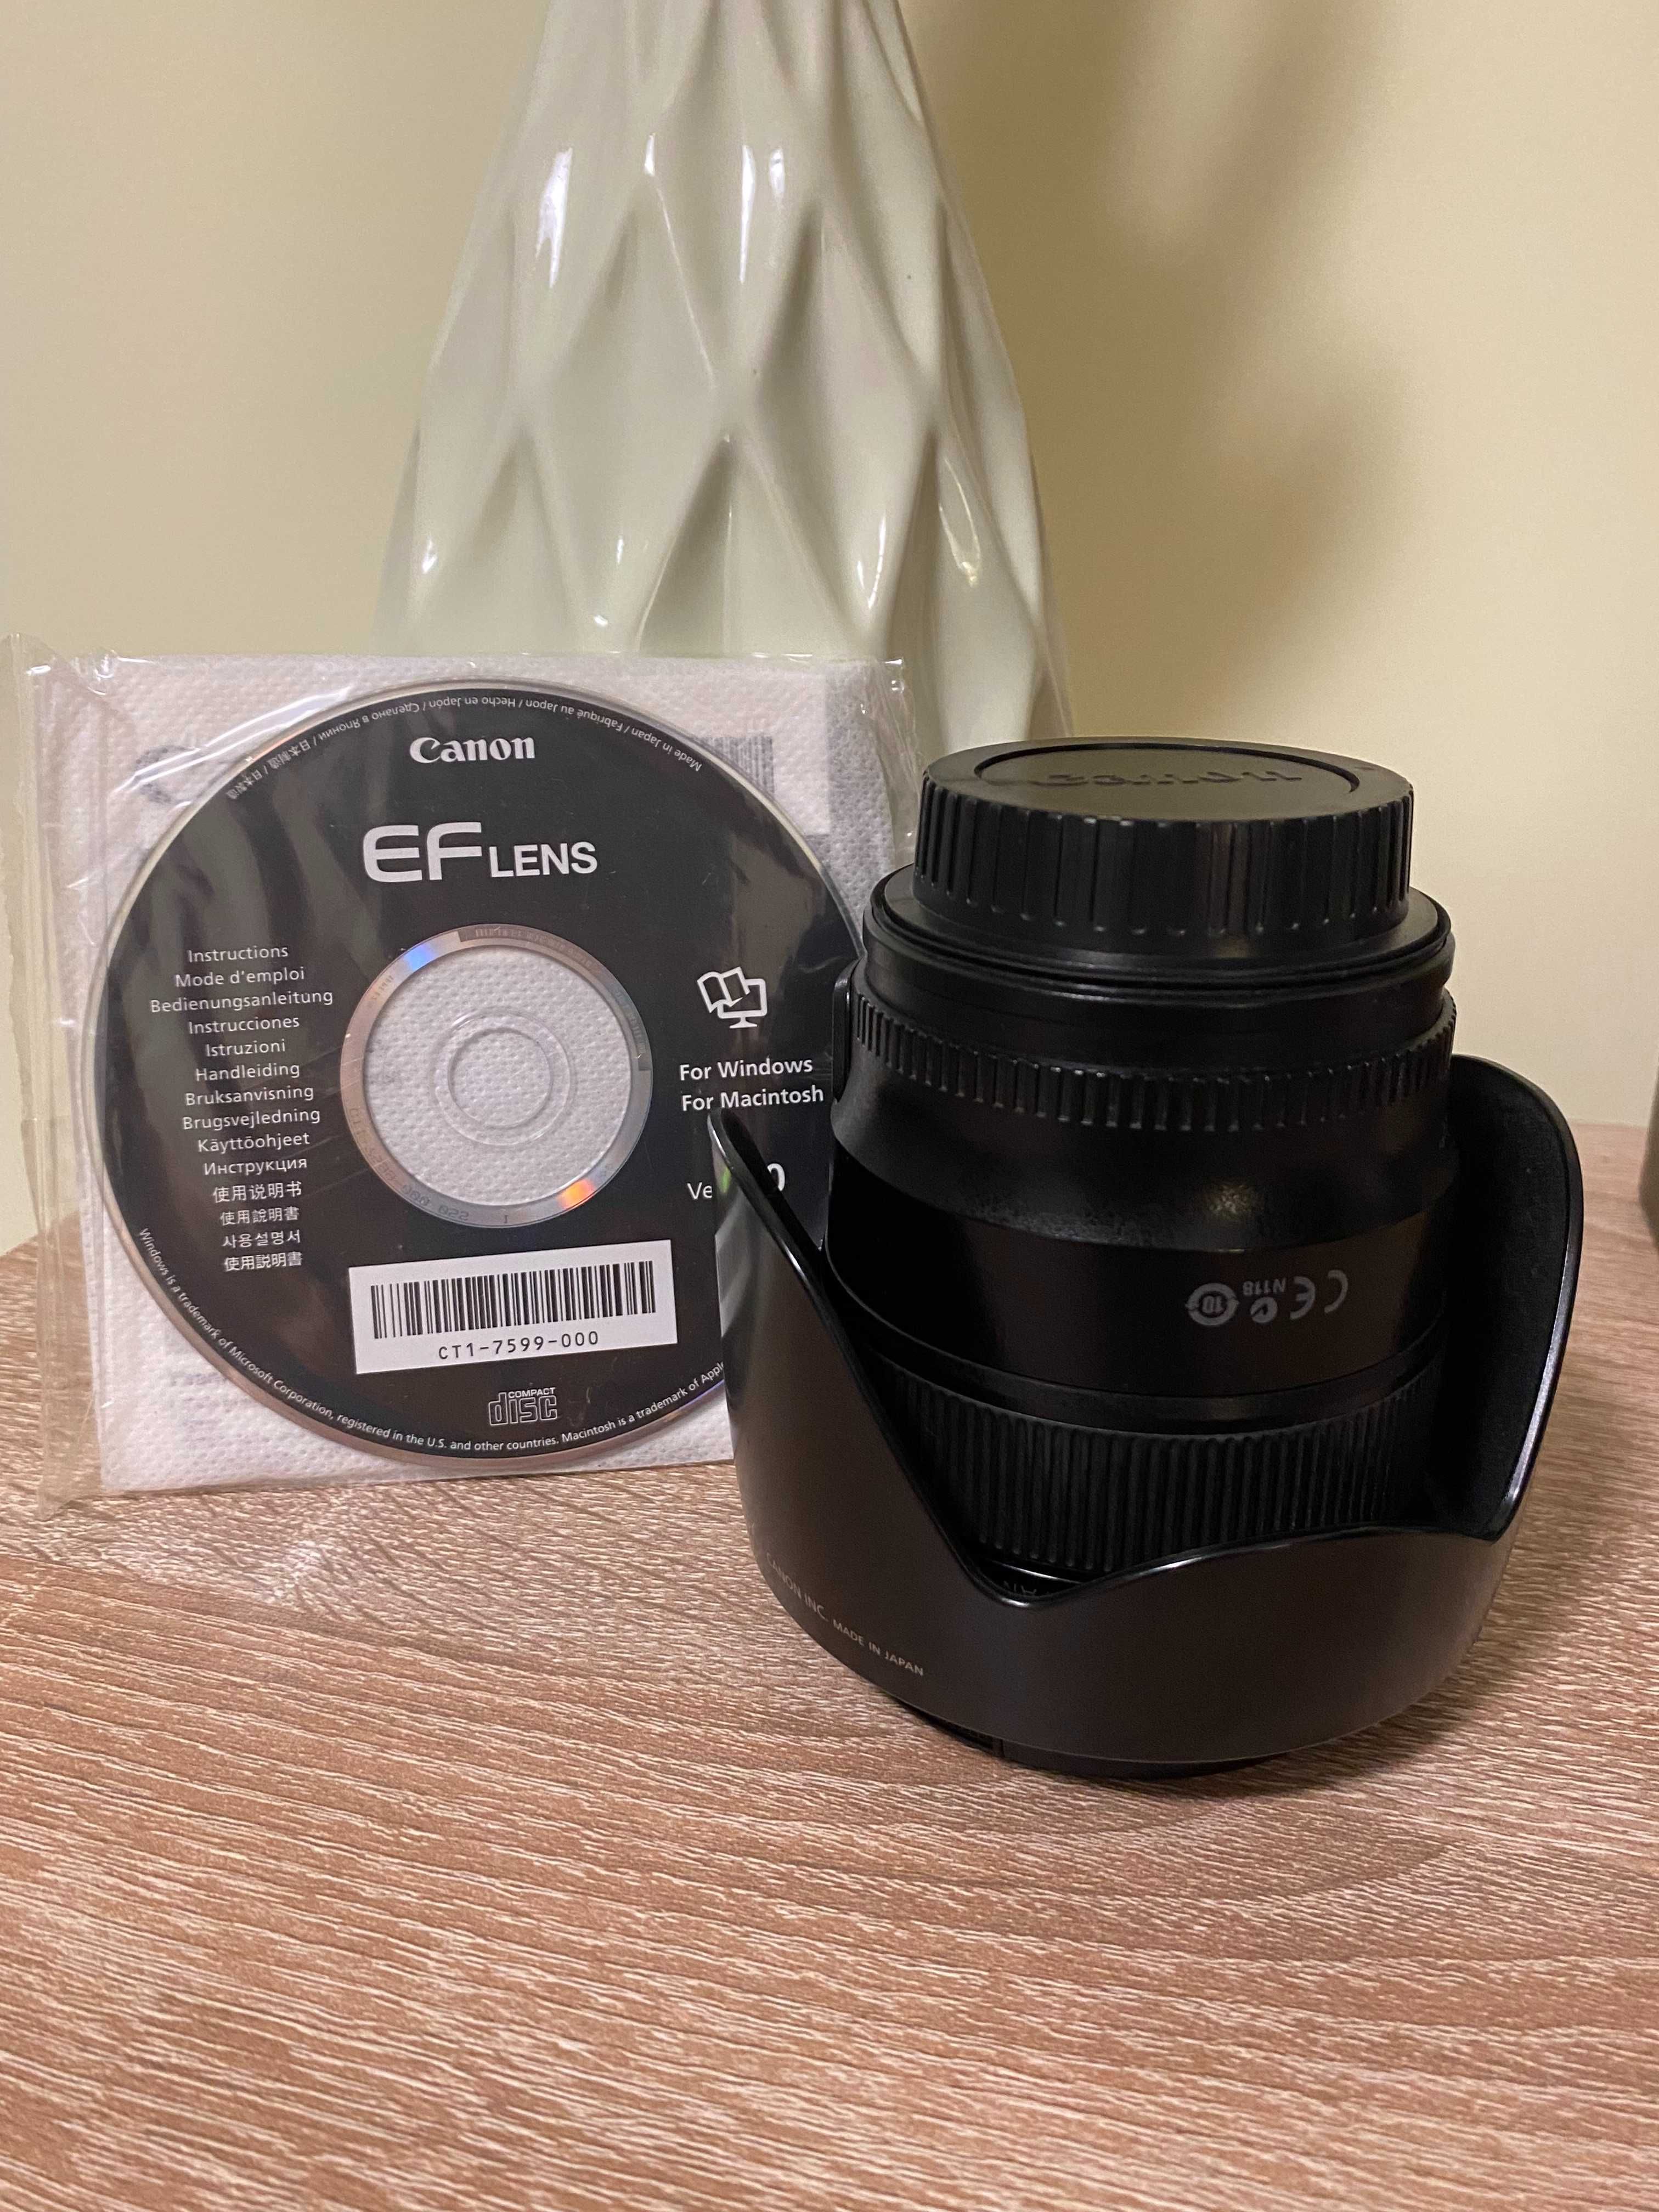 Canon ef 24 mm f/1.4 L II USM